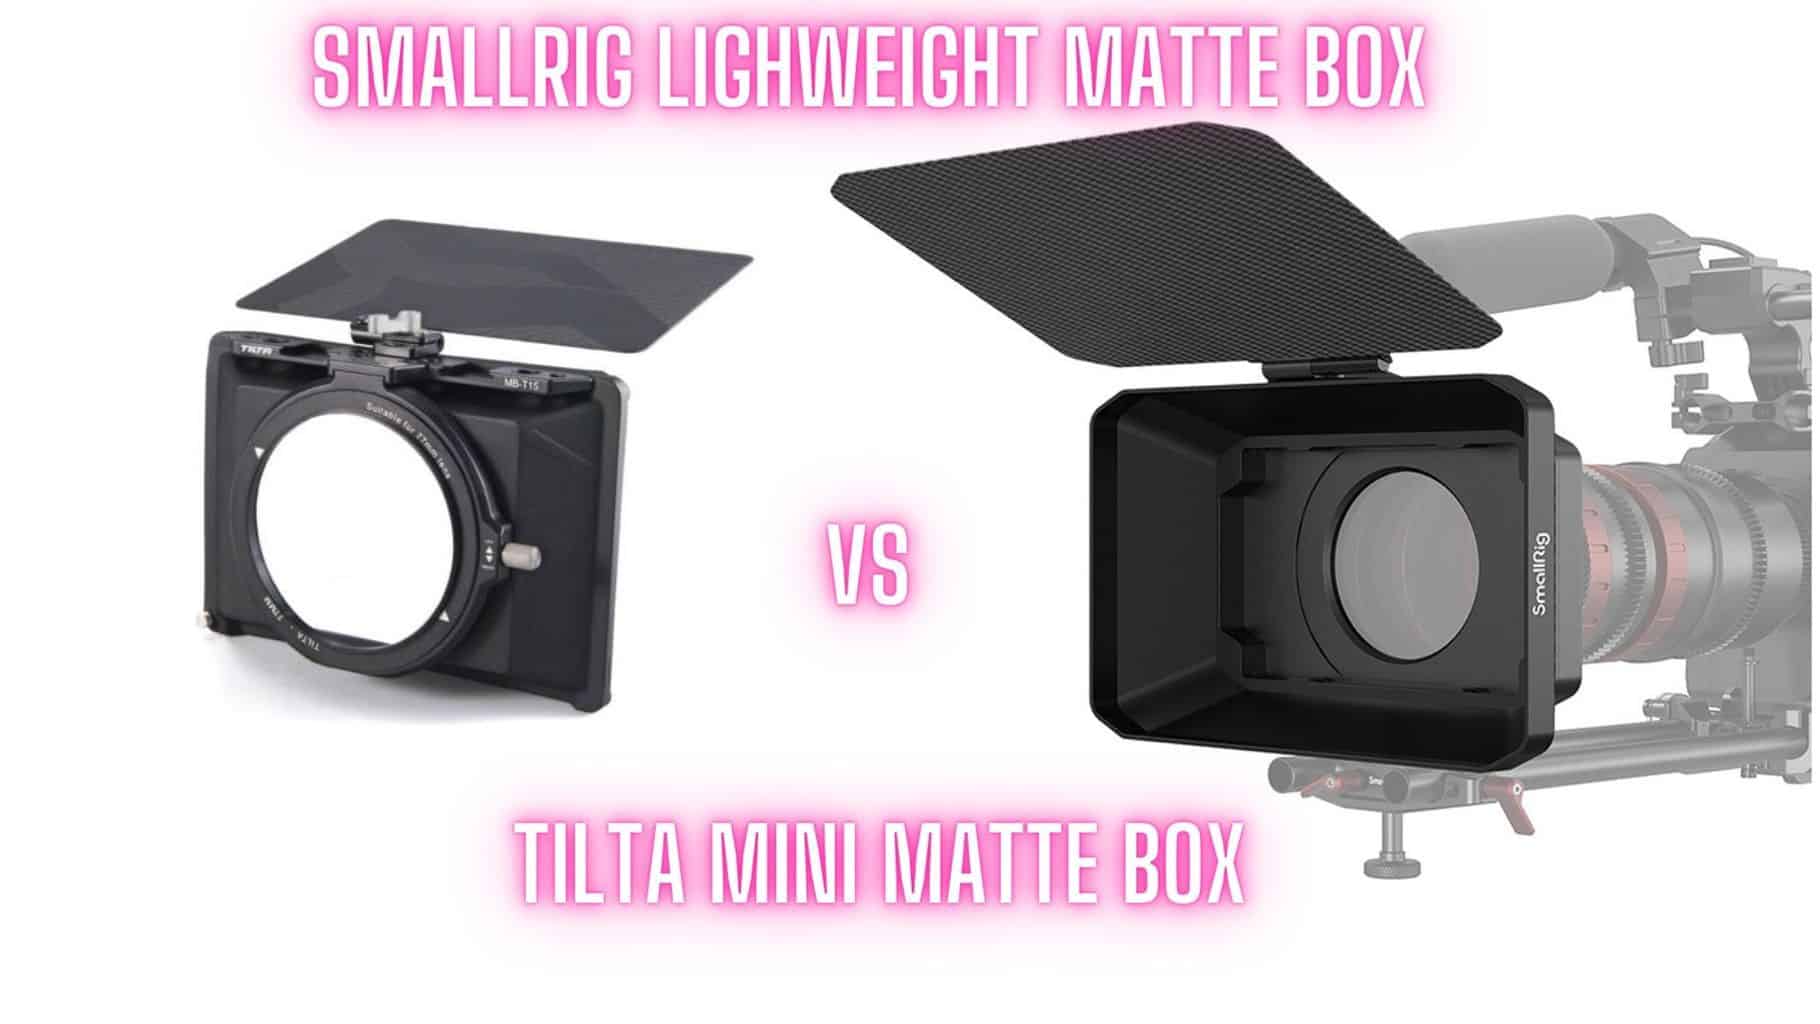 Tilta Mini Matte Box